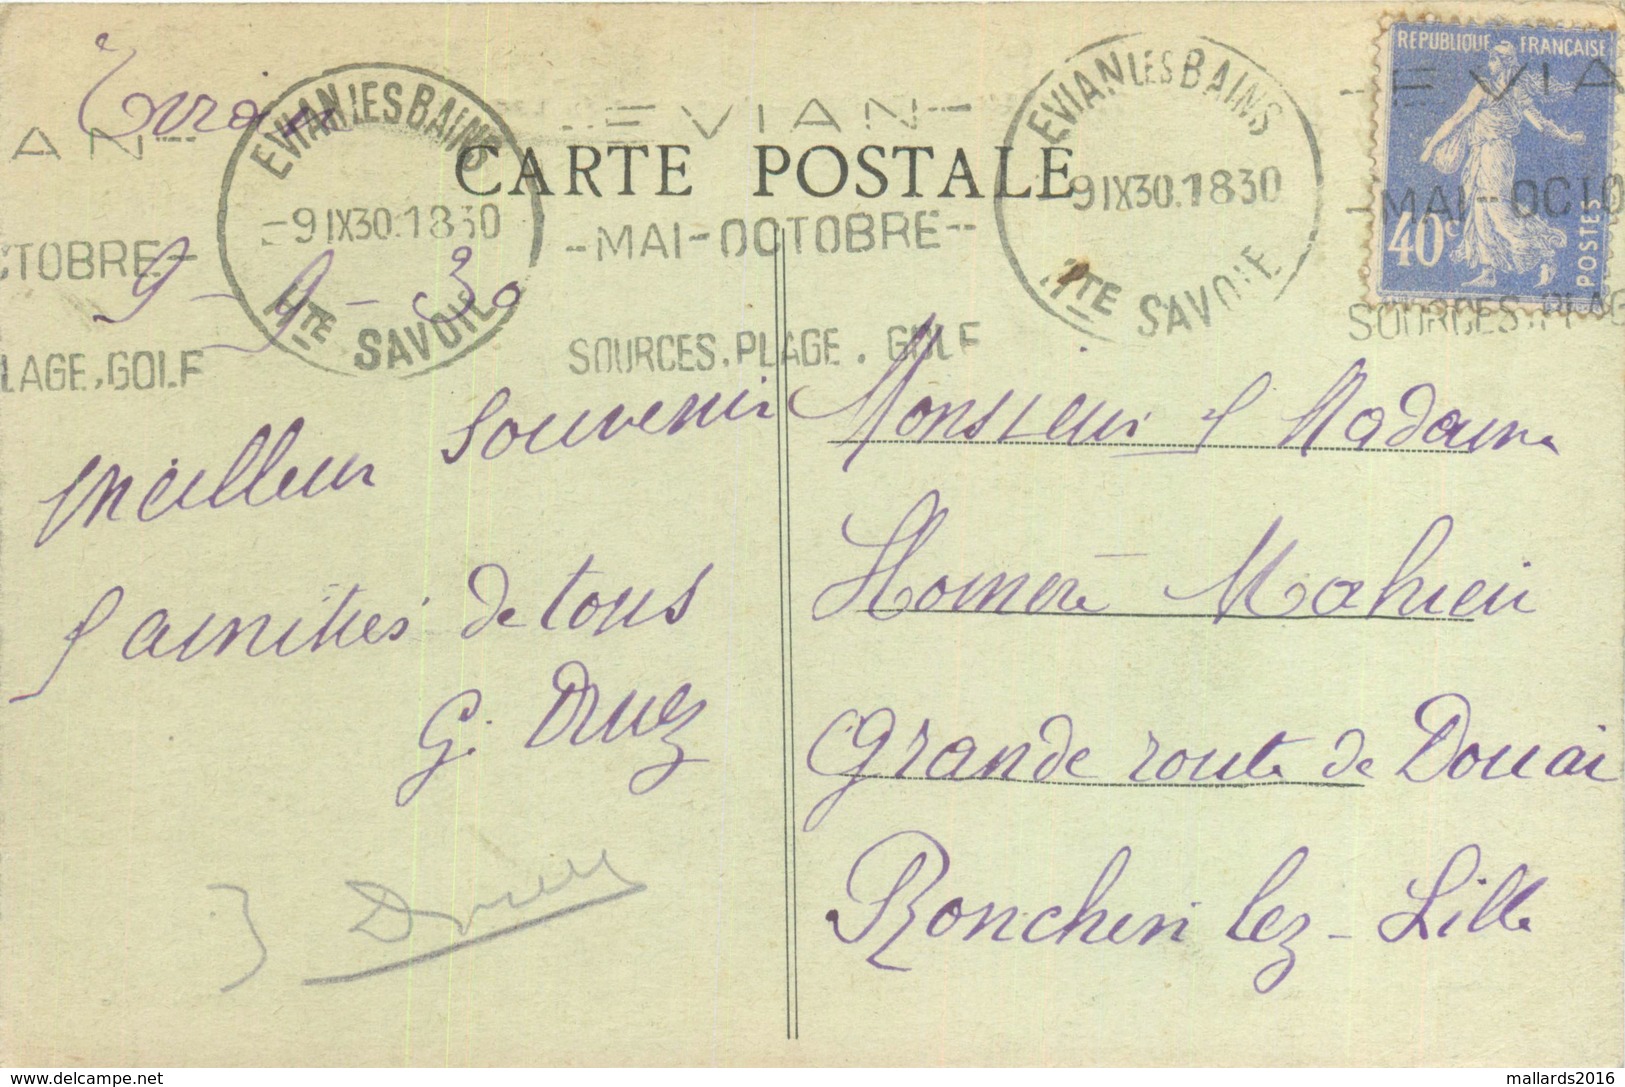 EVIAN-LES-BAINS - VUE PRISE DU LAC - POSTED 1930 ~ AN OLD POSTCARD #88604 - Evian-les-Bains